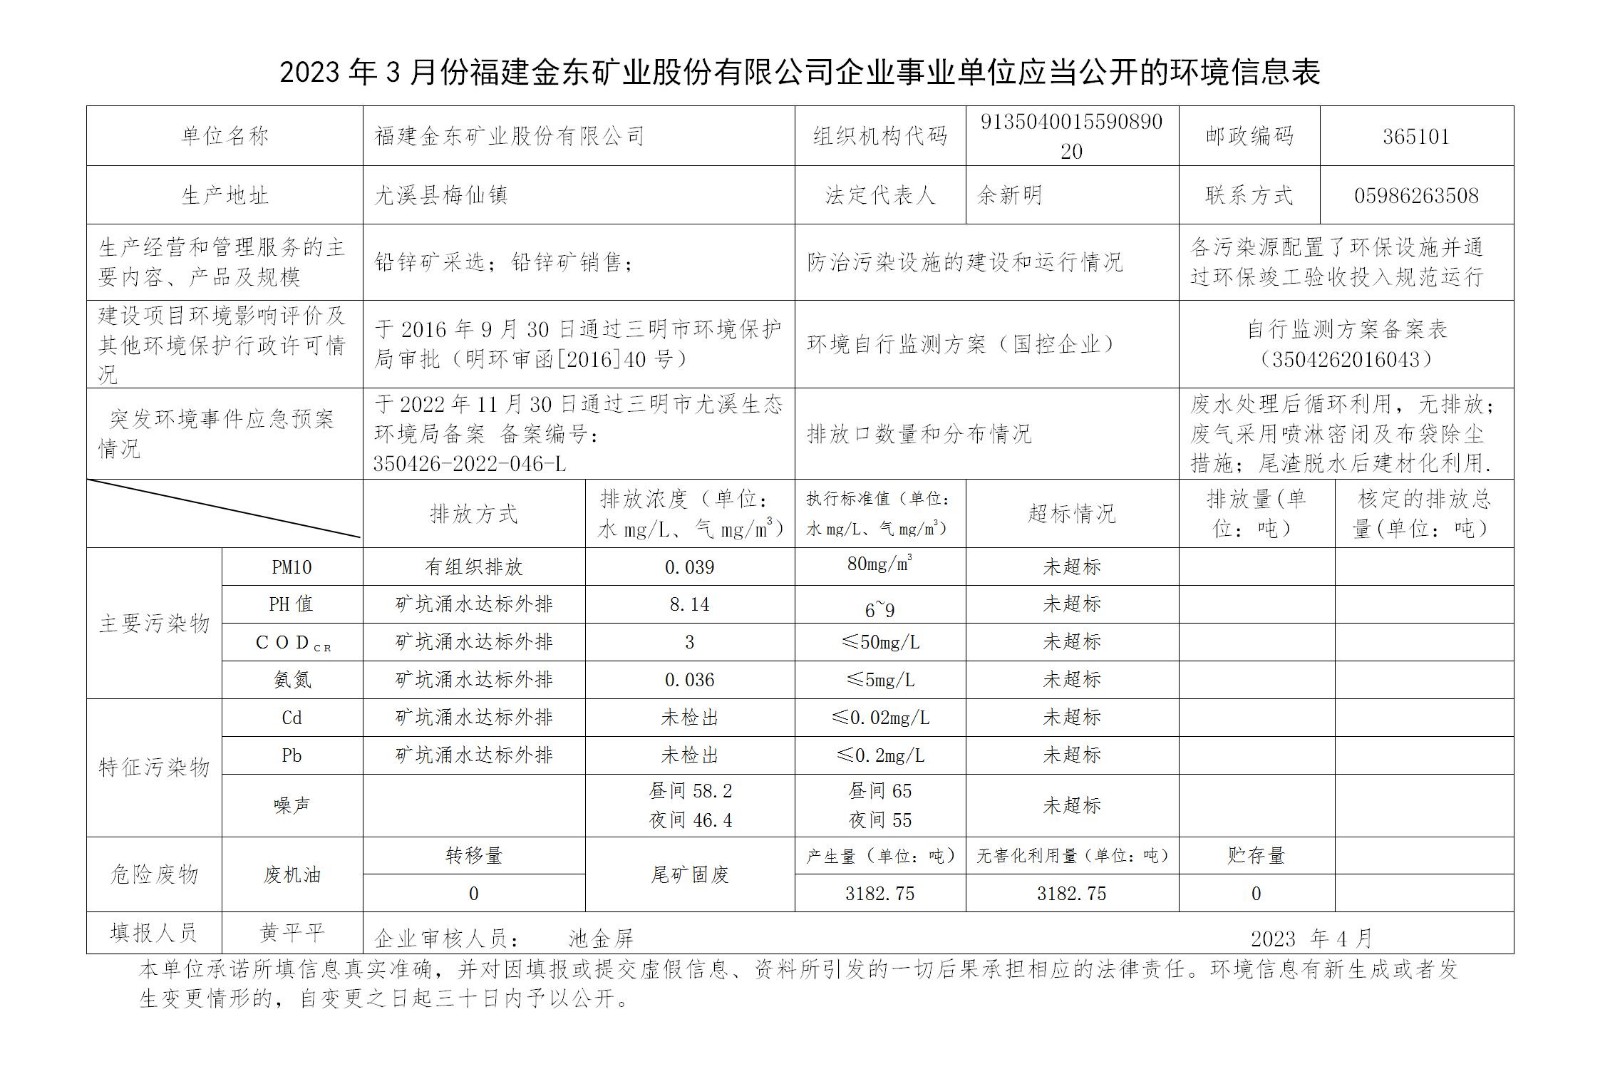 2023年3月份篮球下注APP官方网站(中国)有限公司企业事业单位应当公开的环境信息表_01.jpg